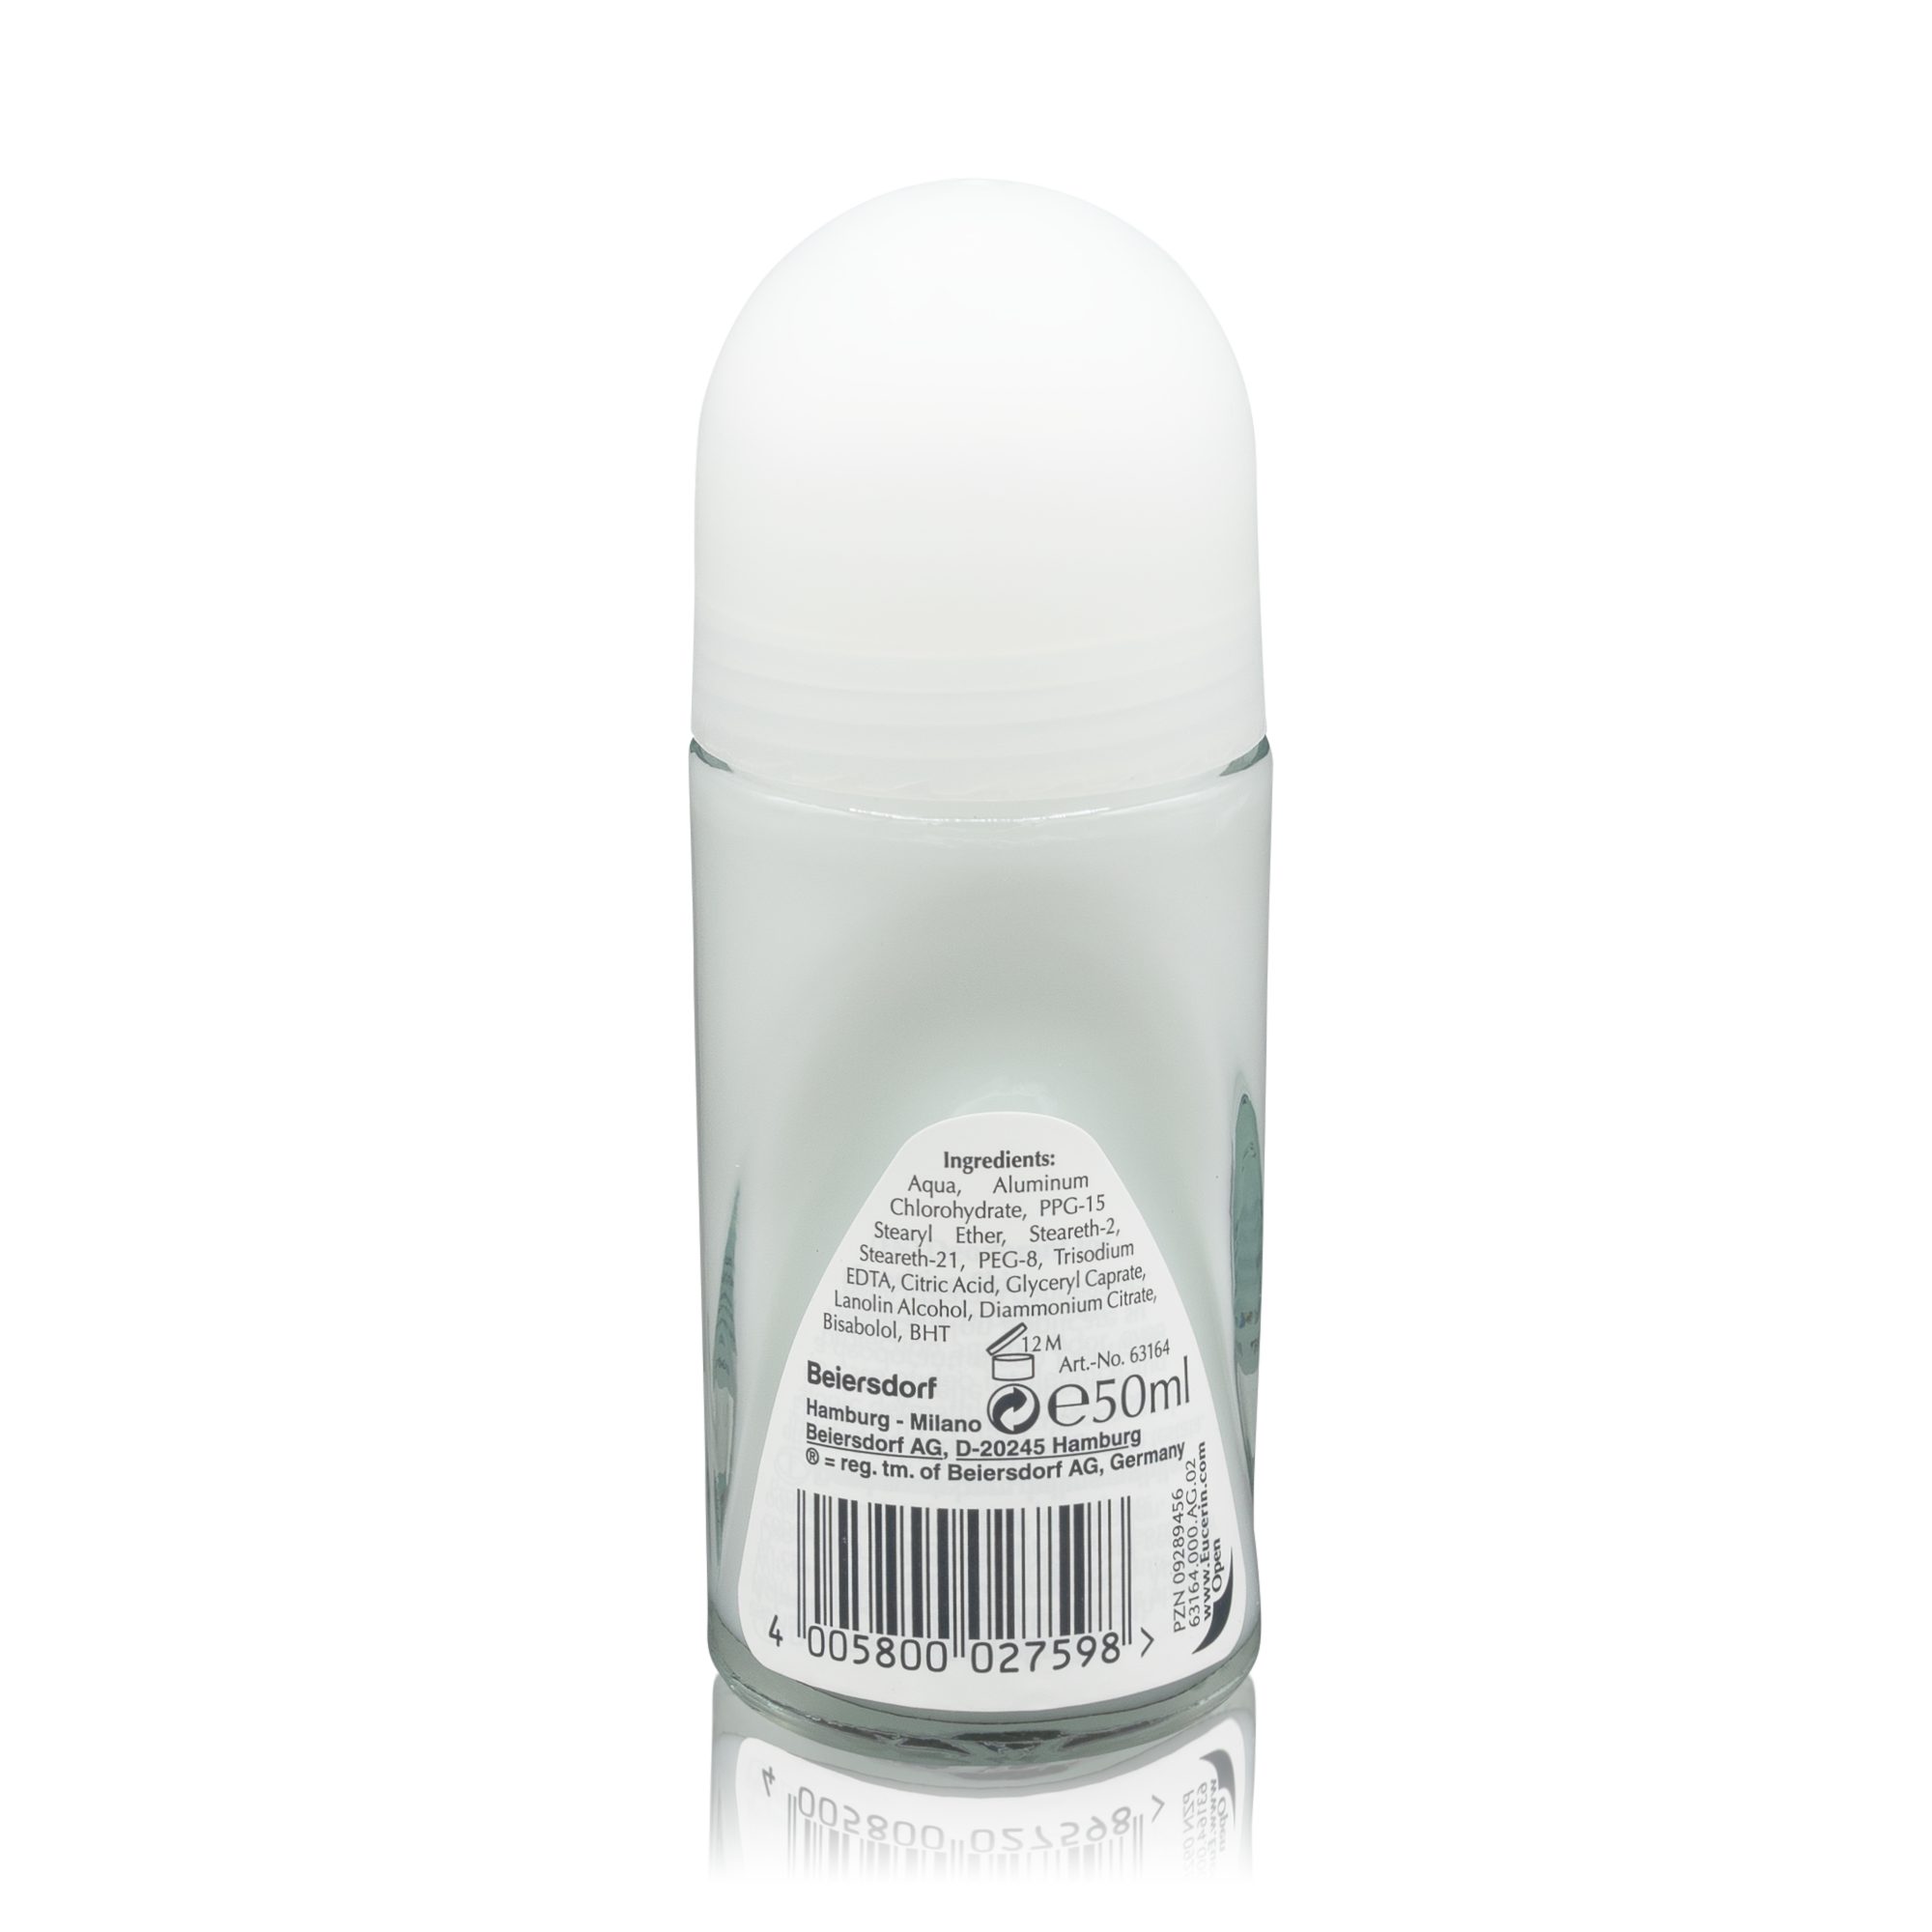 Eucerin Deo-Roller Eucerin Deodorant empfindlicher zuverlässiger gegen Roll-On, Schutz Schweißgeruch. - 24h Ein Haut bei